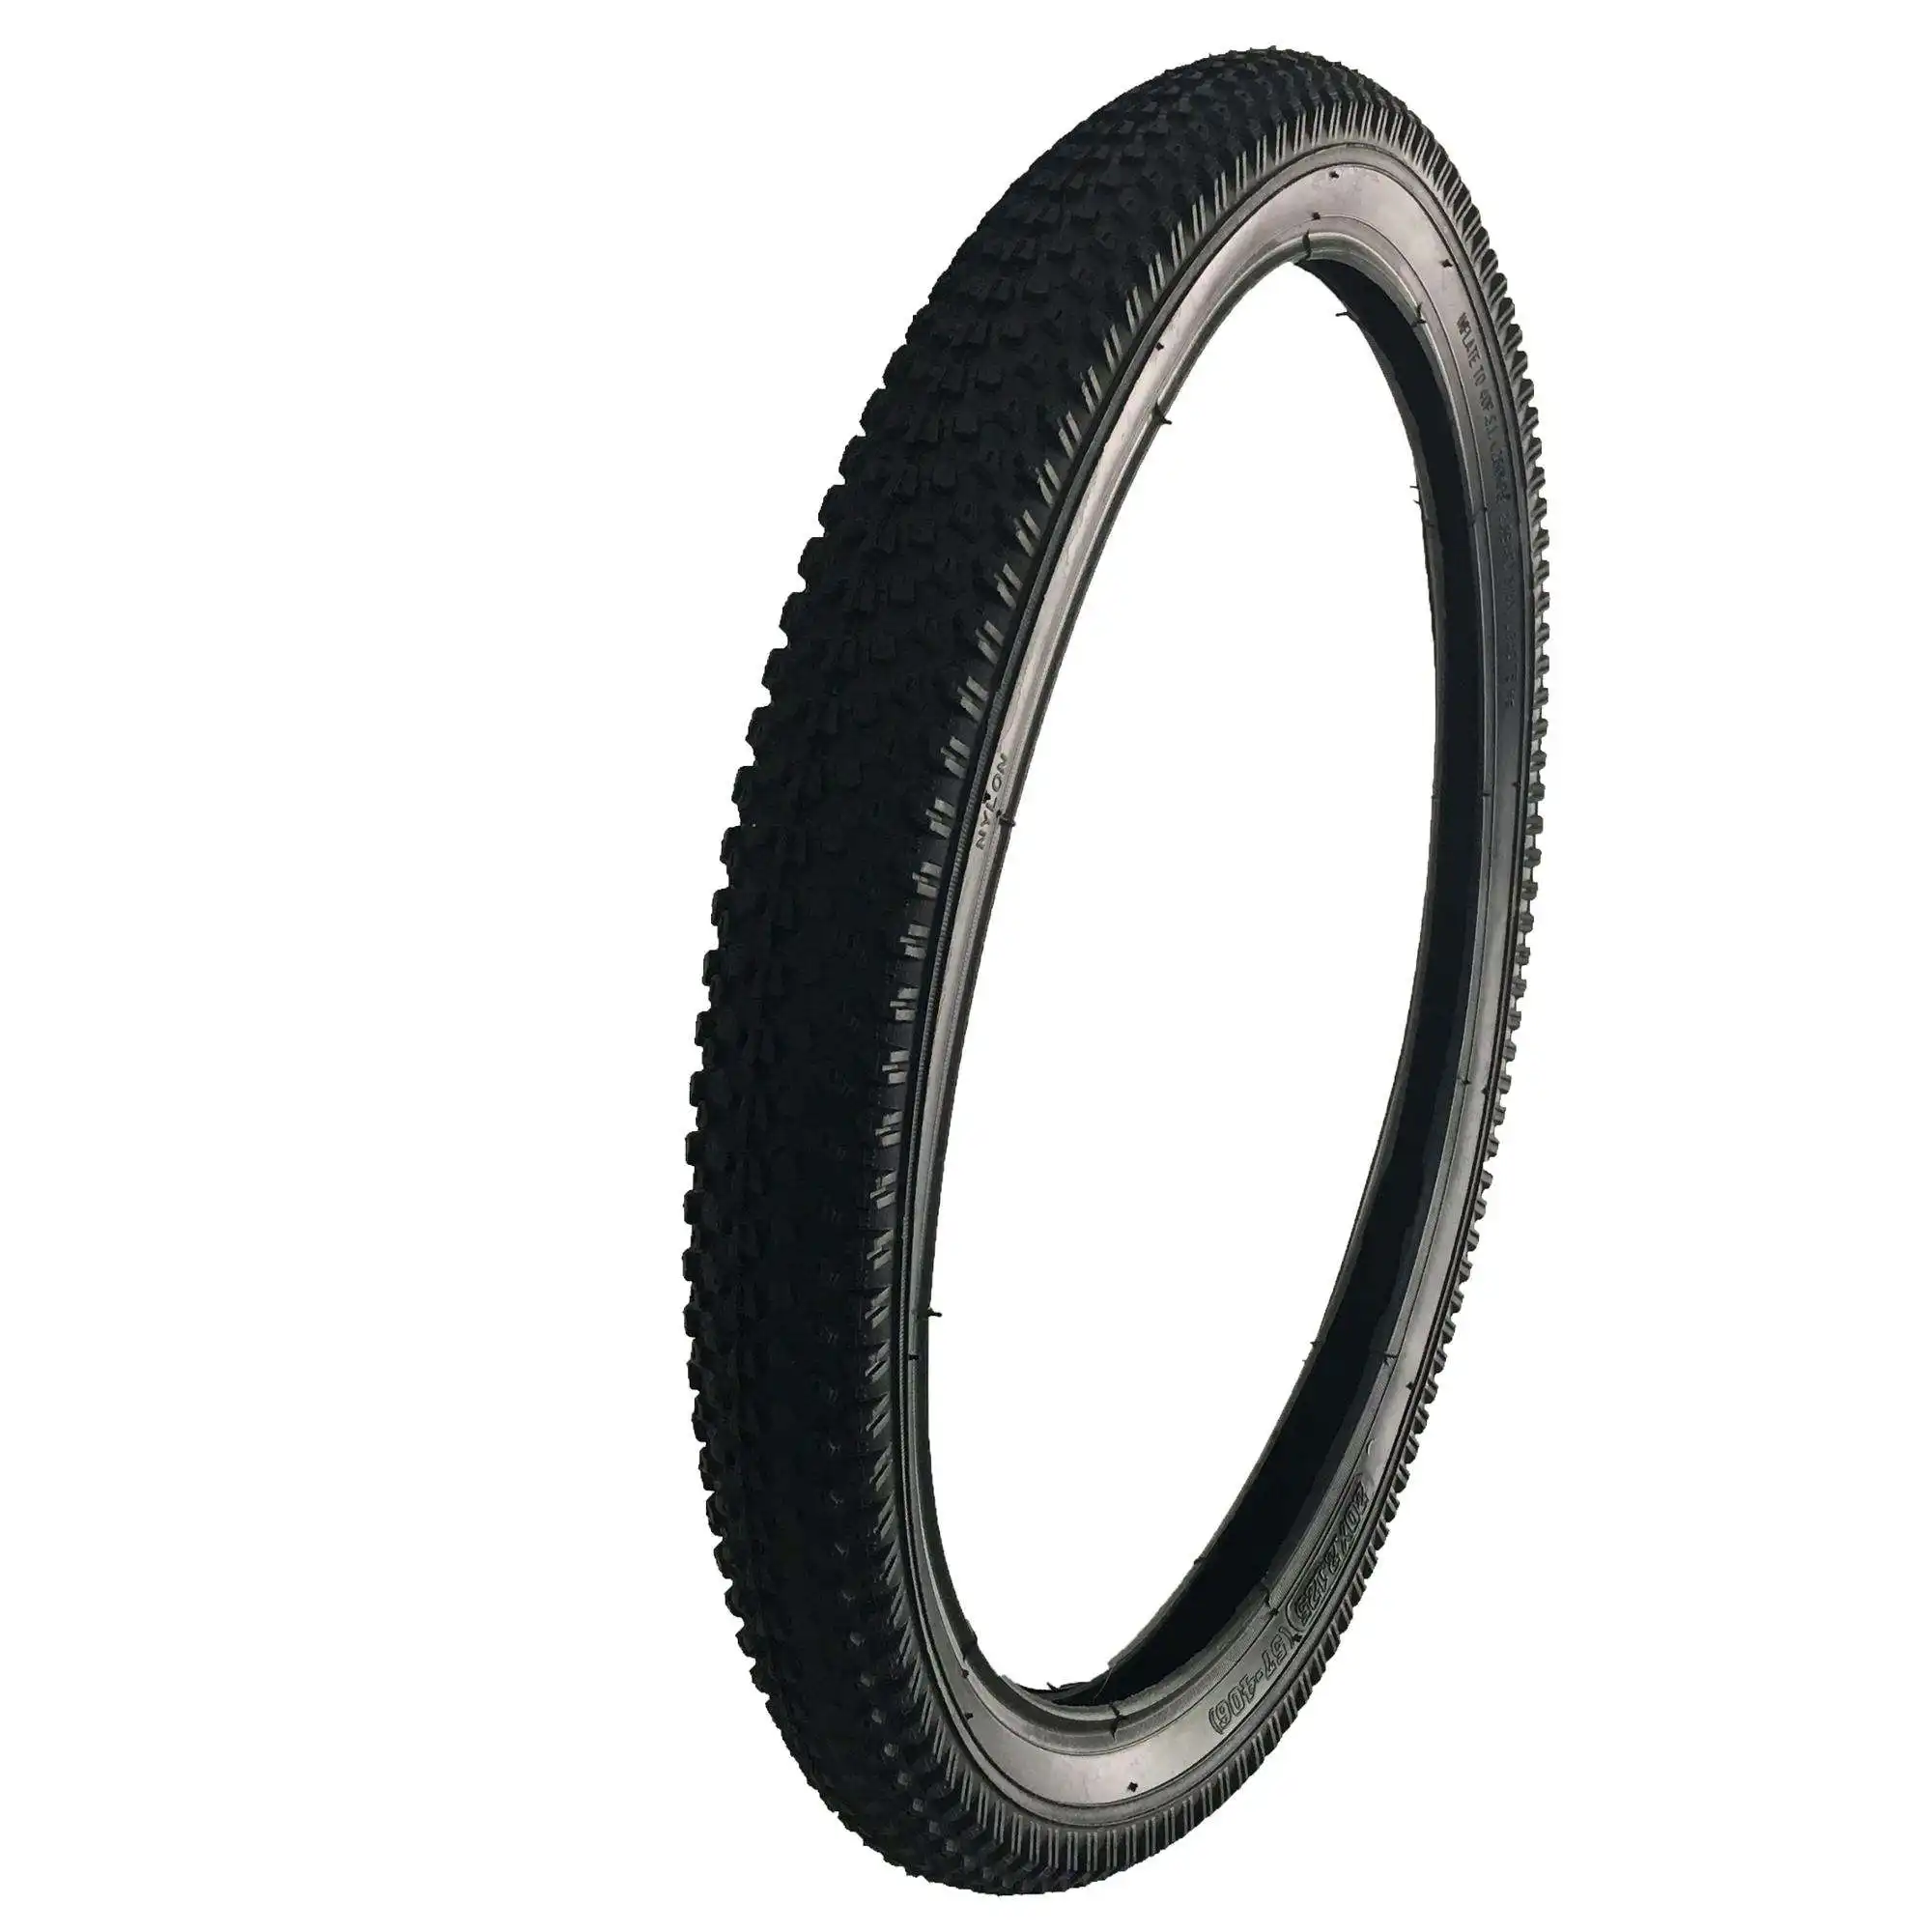 Schlussverkauf viele Arten günstige schwarze Gummireifen Fahrrad-O-Ring-Fahrradreifen zu verkaufen